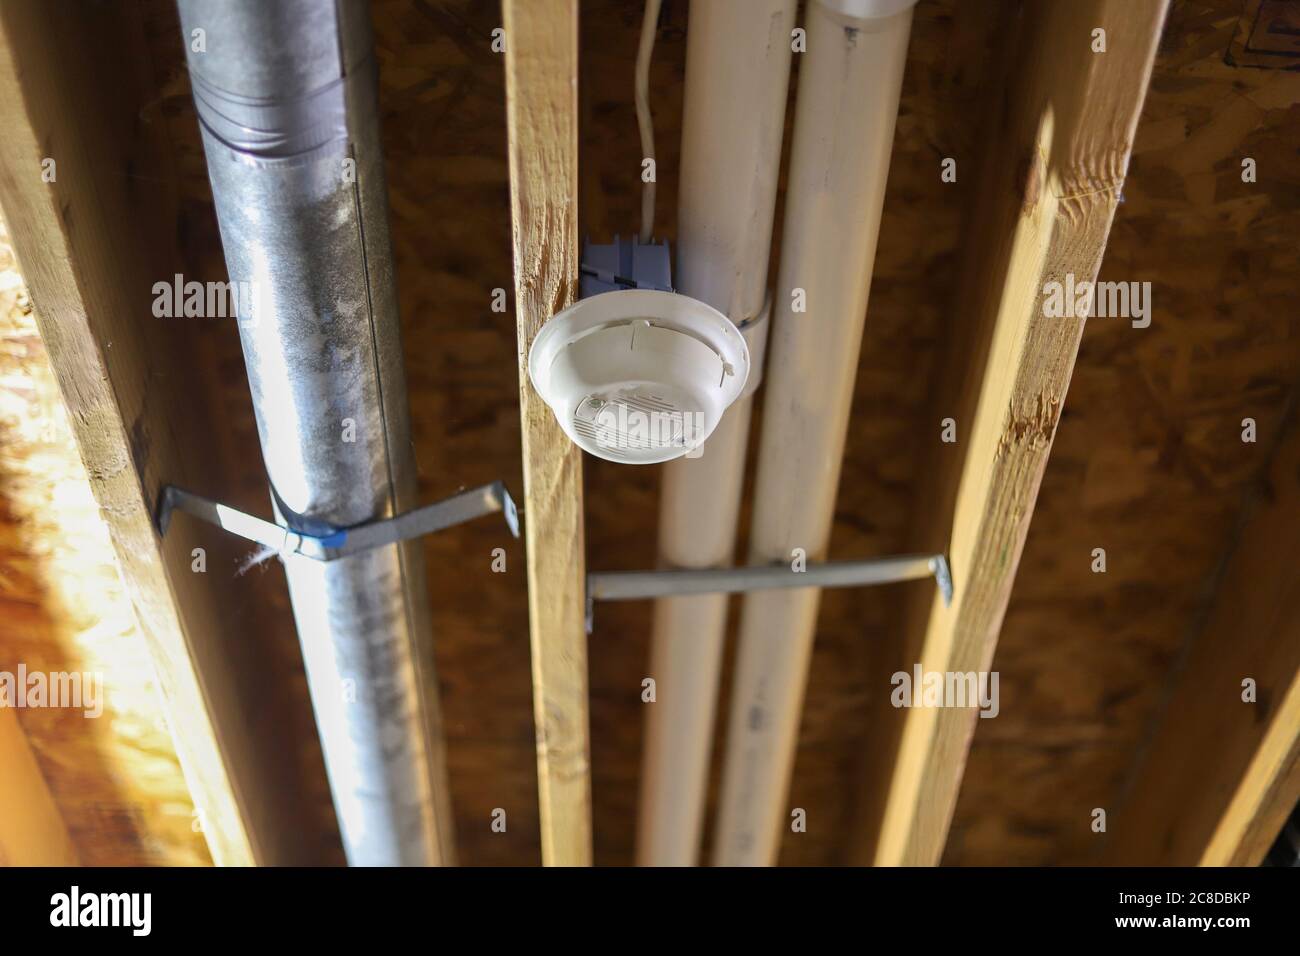 Ein Rauchmelder an der Decke in einem Keller eines Wohnhauses  Stockfotografie - Alamy